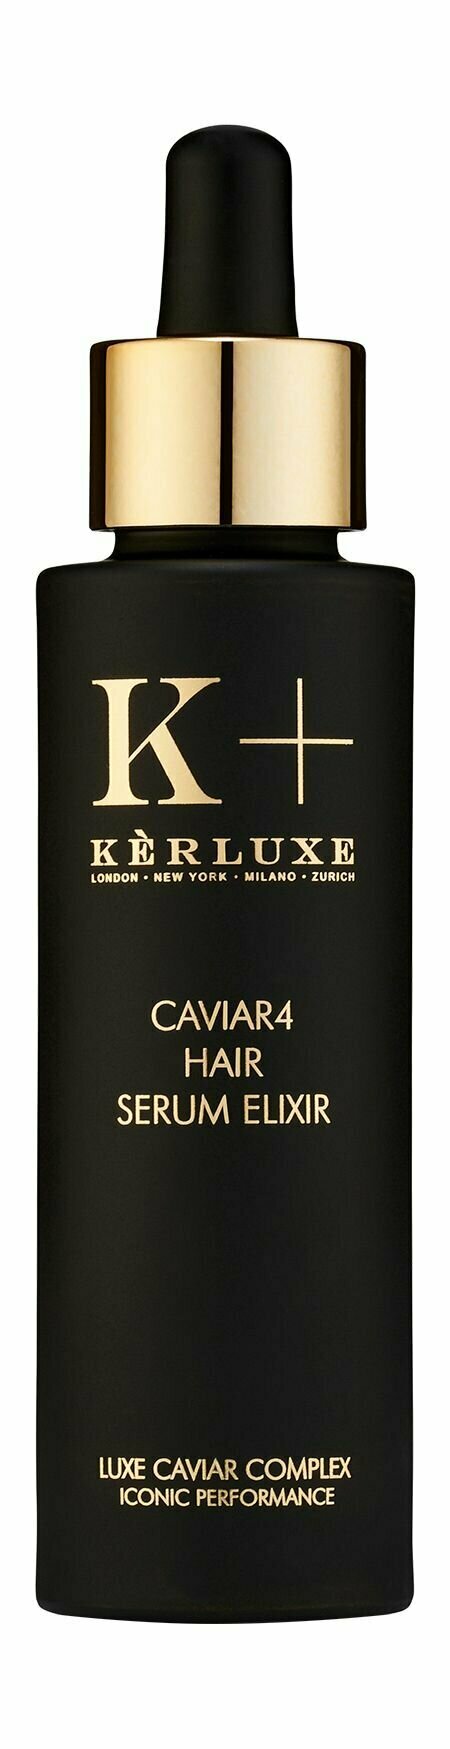 Сыворотка-эликсир для питания и восстановления волос с якорными экстрактами Kerluxe Caviar4 Hair Serum Elixir